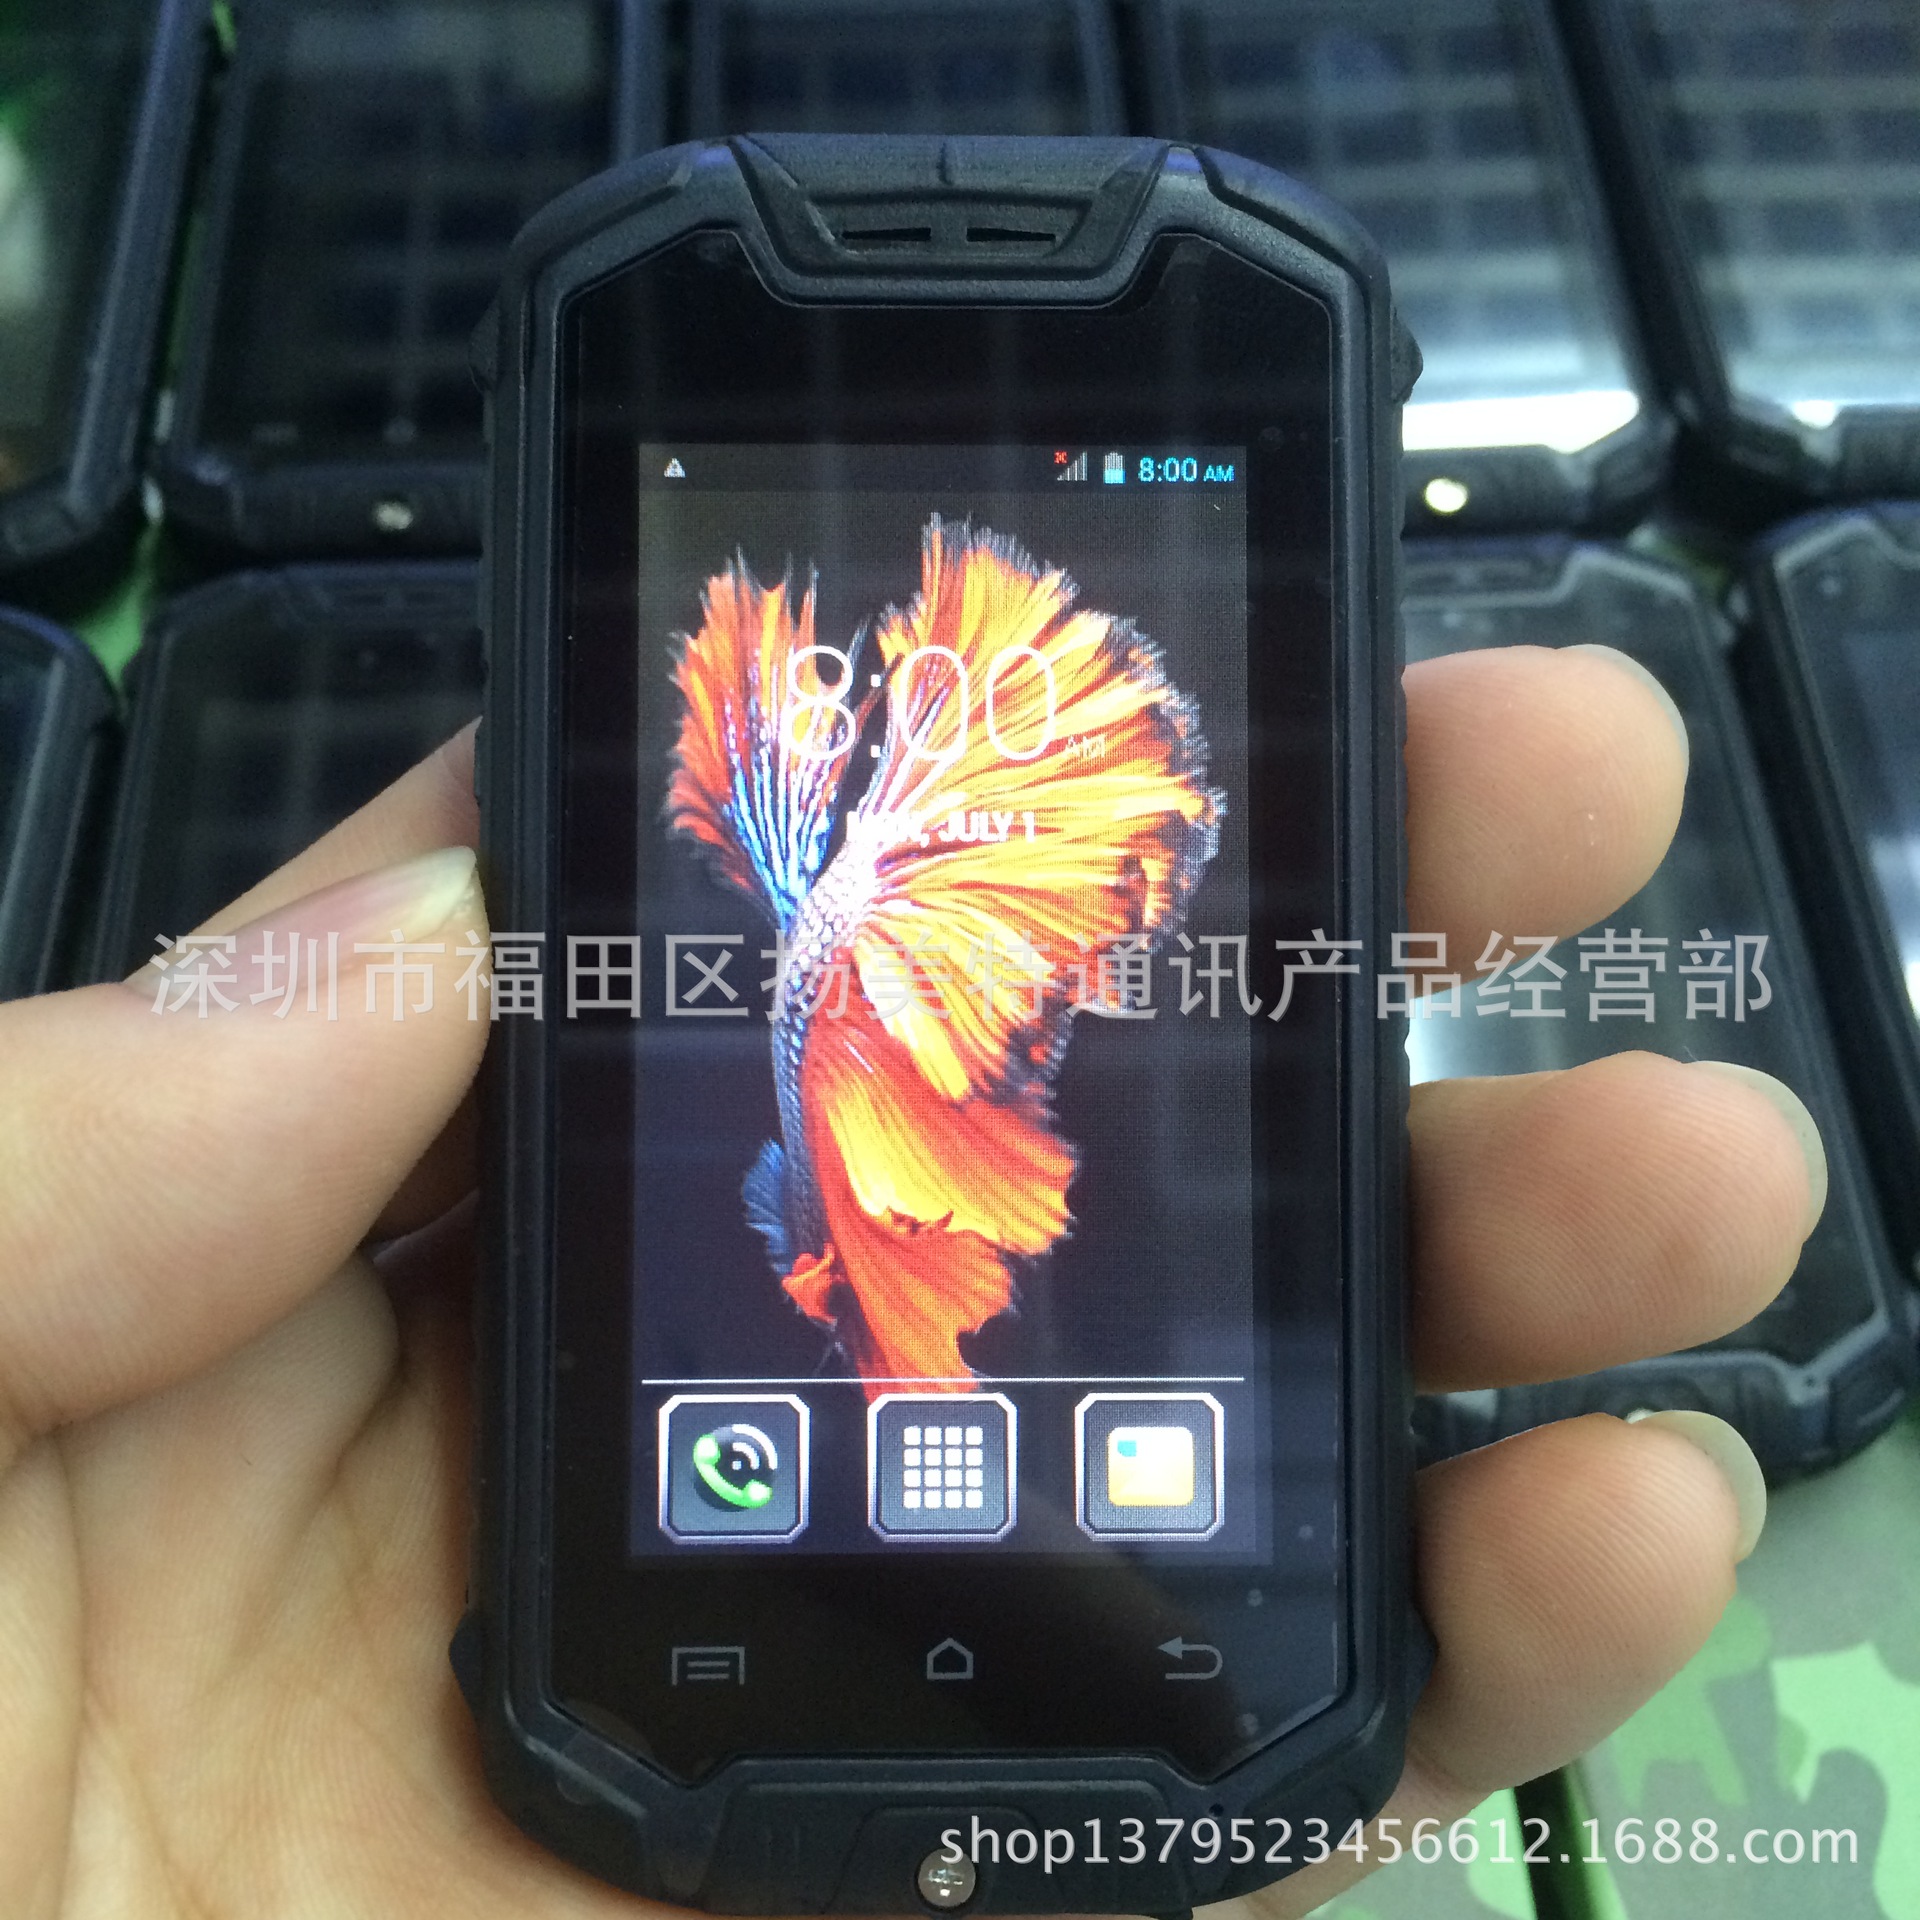 生产批发新款Z18三防智能手机 4.0寸屏迷你3G手机 A8 V8+智能手机